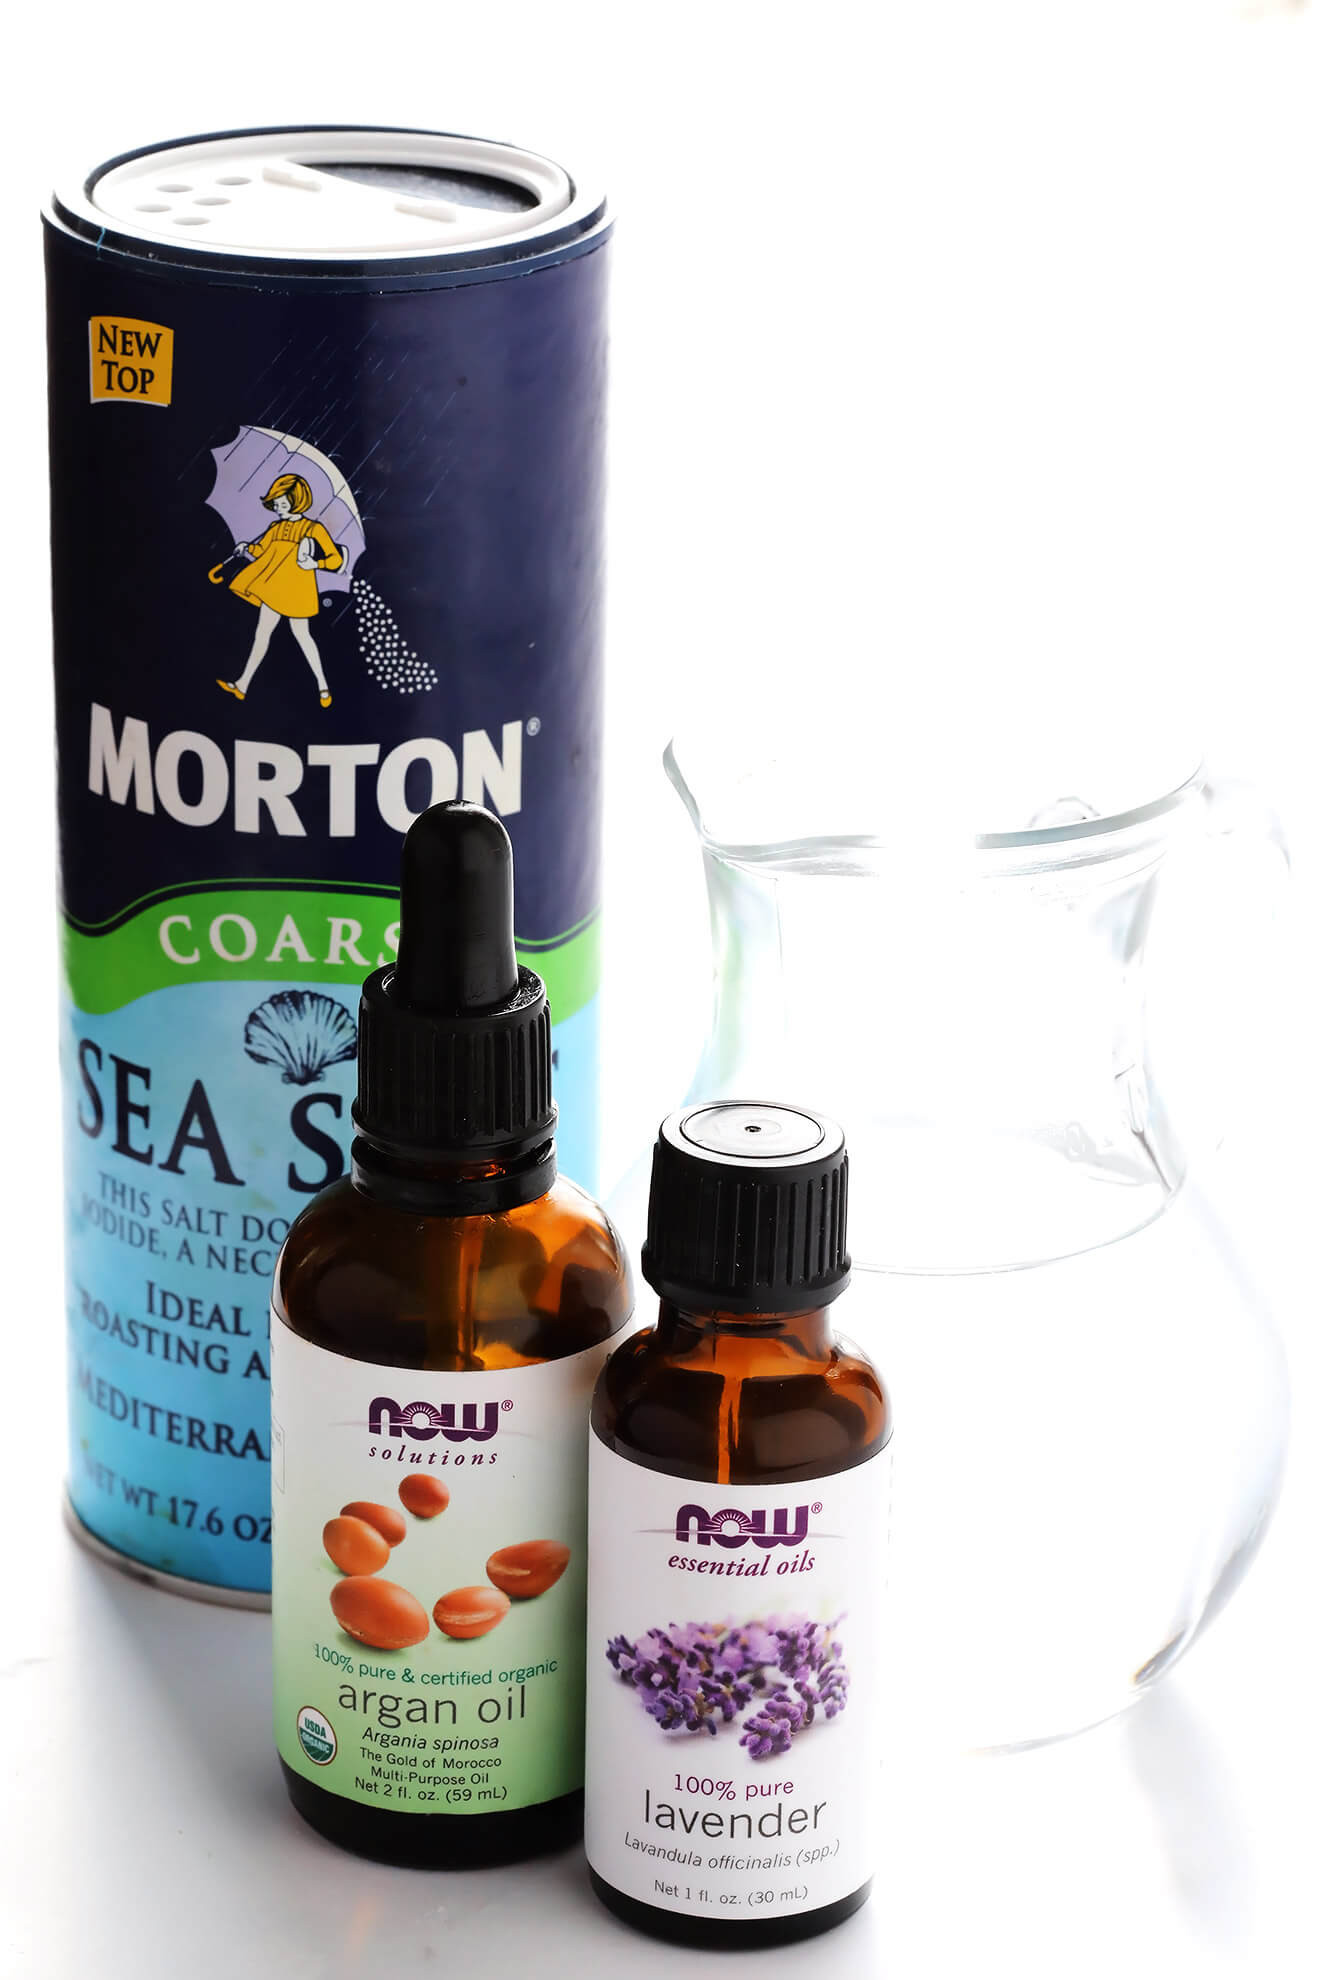 Best ideas about DIY Sea Salt Hair Spray
. Save or Pin DIY Sea Salt Texturizing Hair Spray Now.